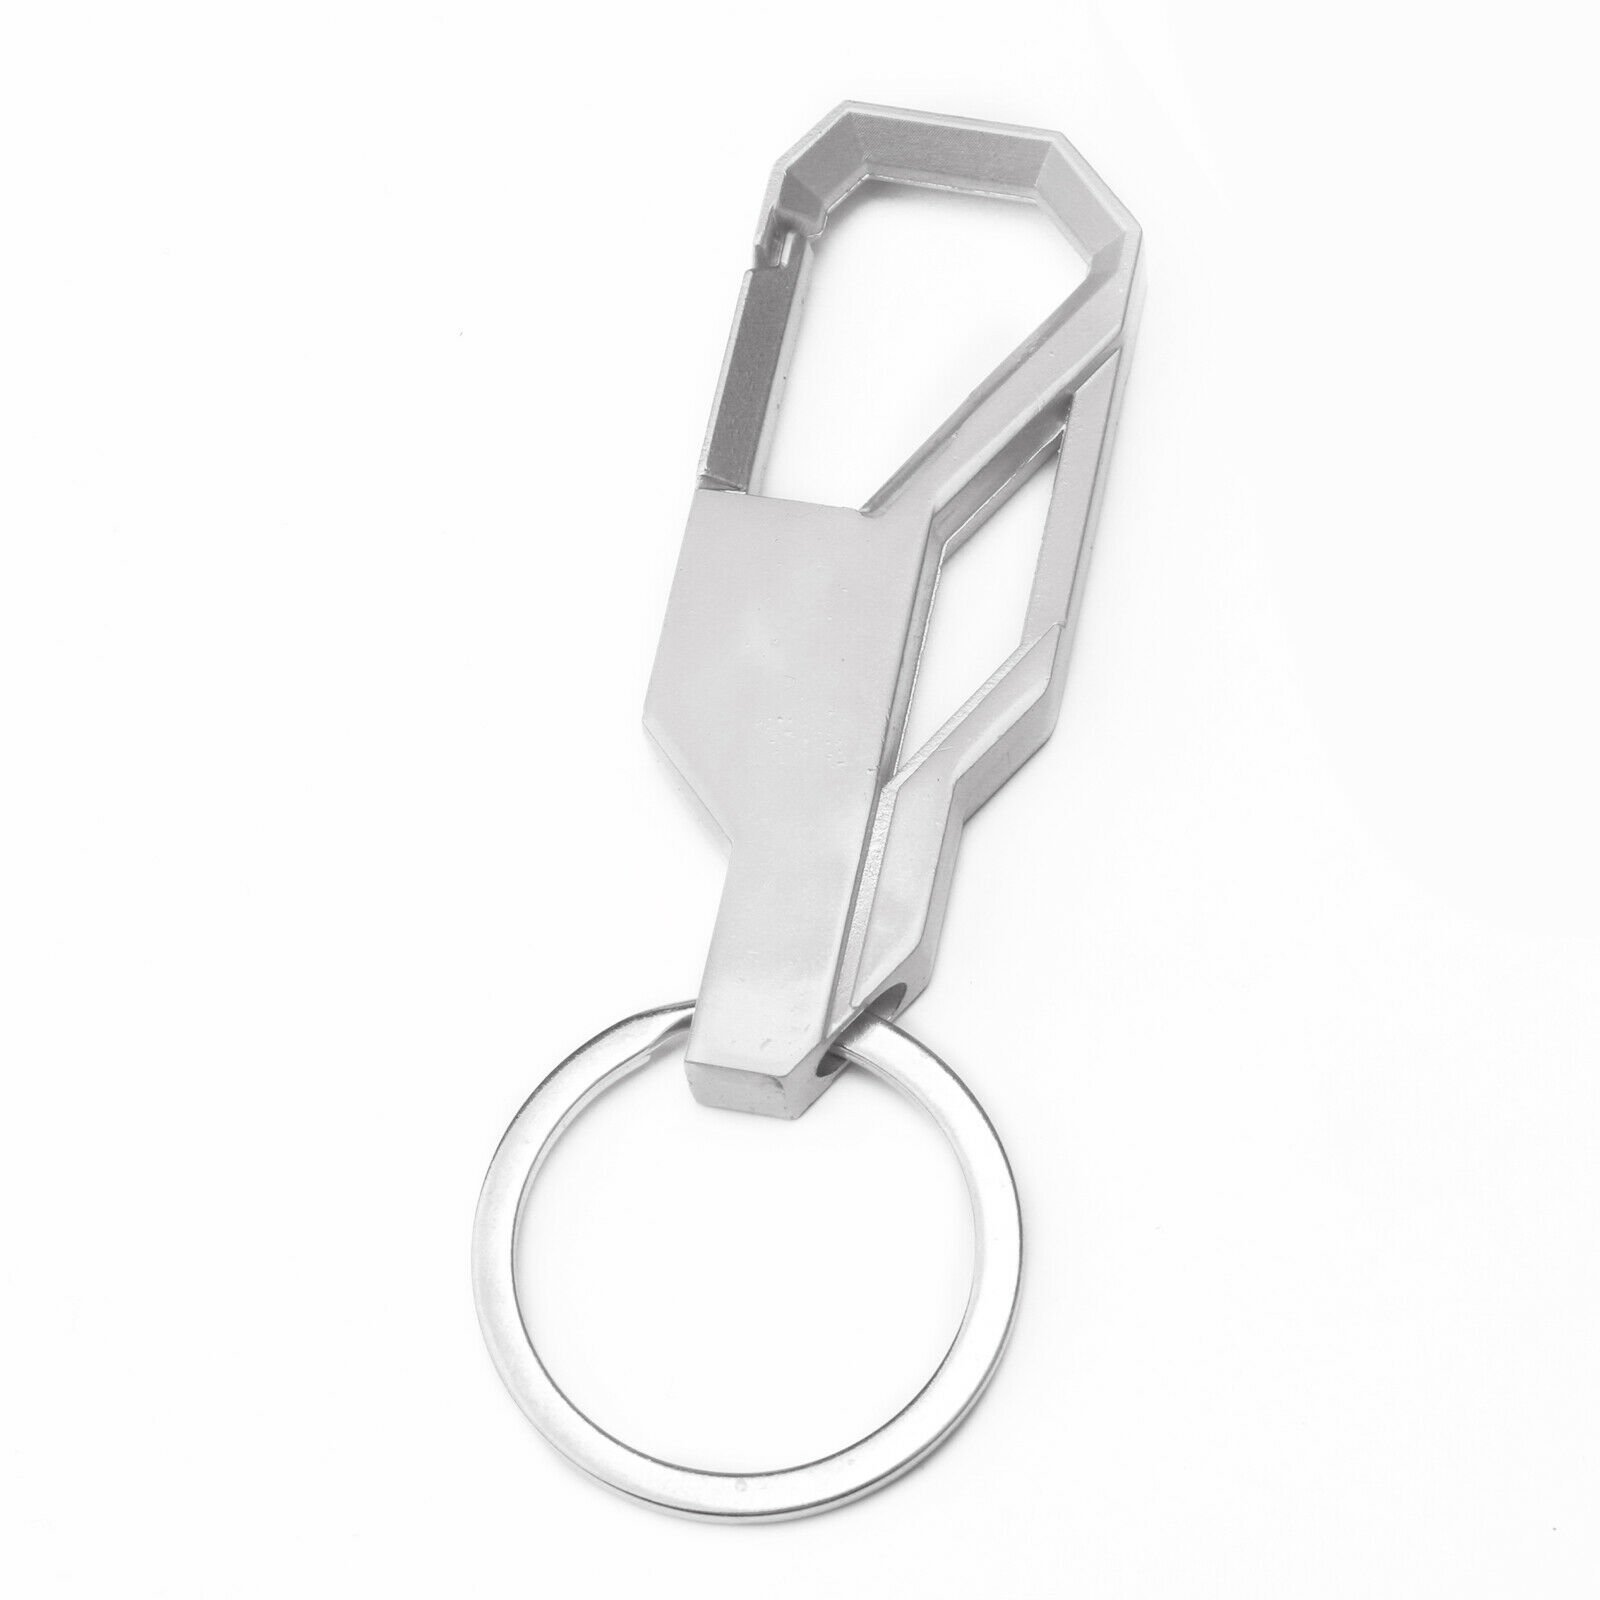 Silver Men Creative Alloy Metal Keyfob Car Keyring Keychain Key Chain Ring Gift 